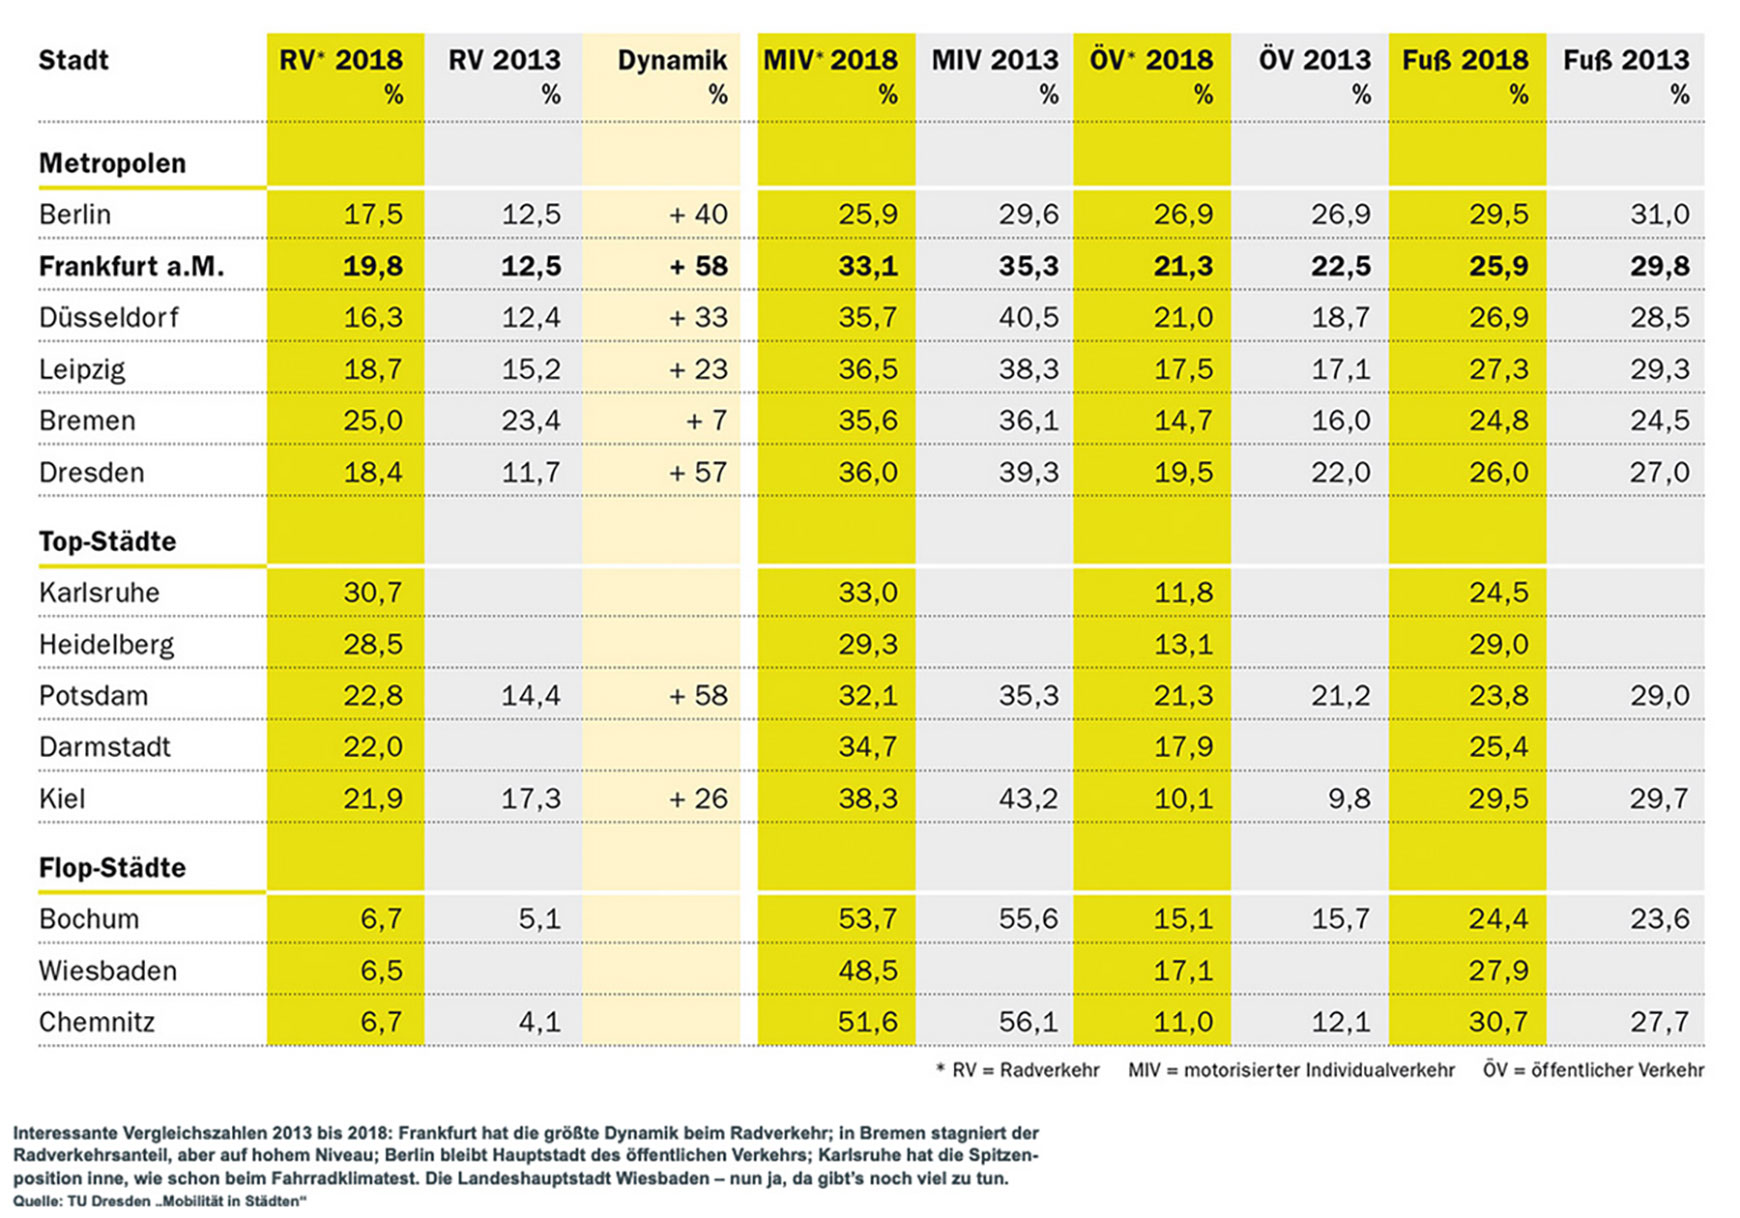 Eine große Tabelle mit Vergleichszahlen aus den Jahren 2018 und 2013 aus verschiedenen Städten in Deutschland